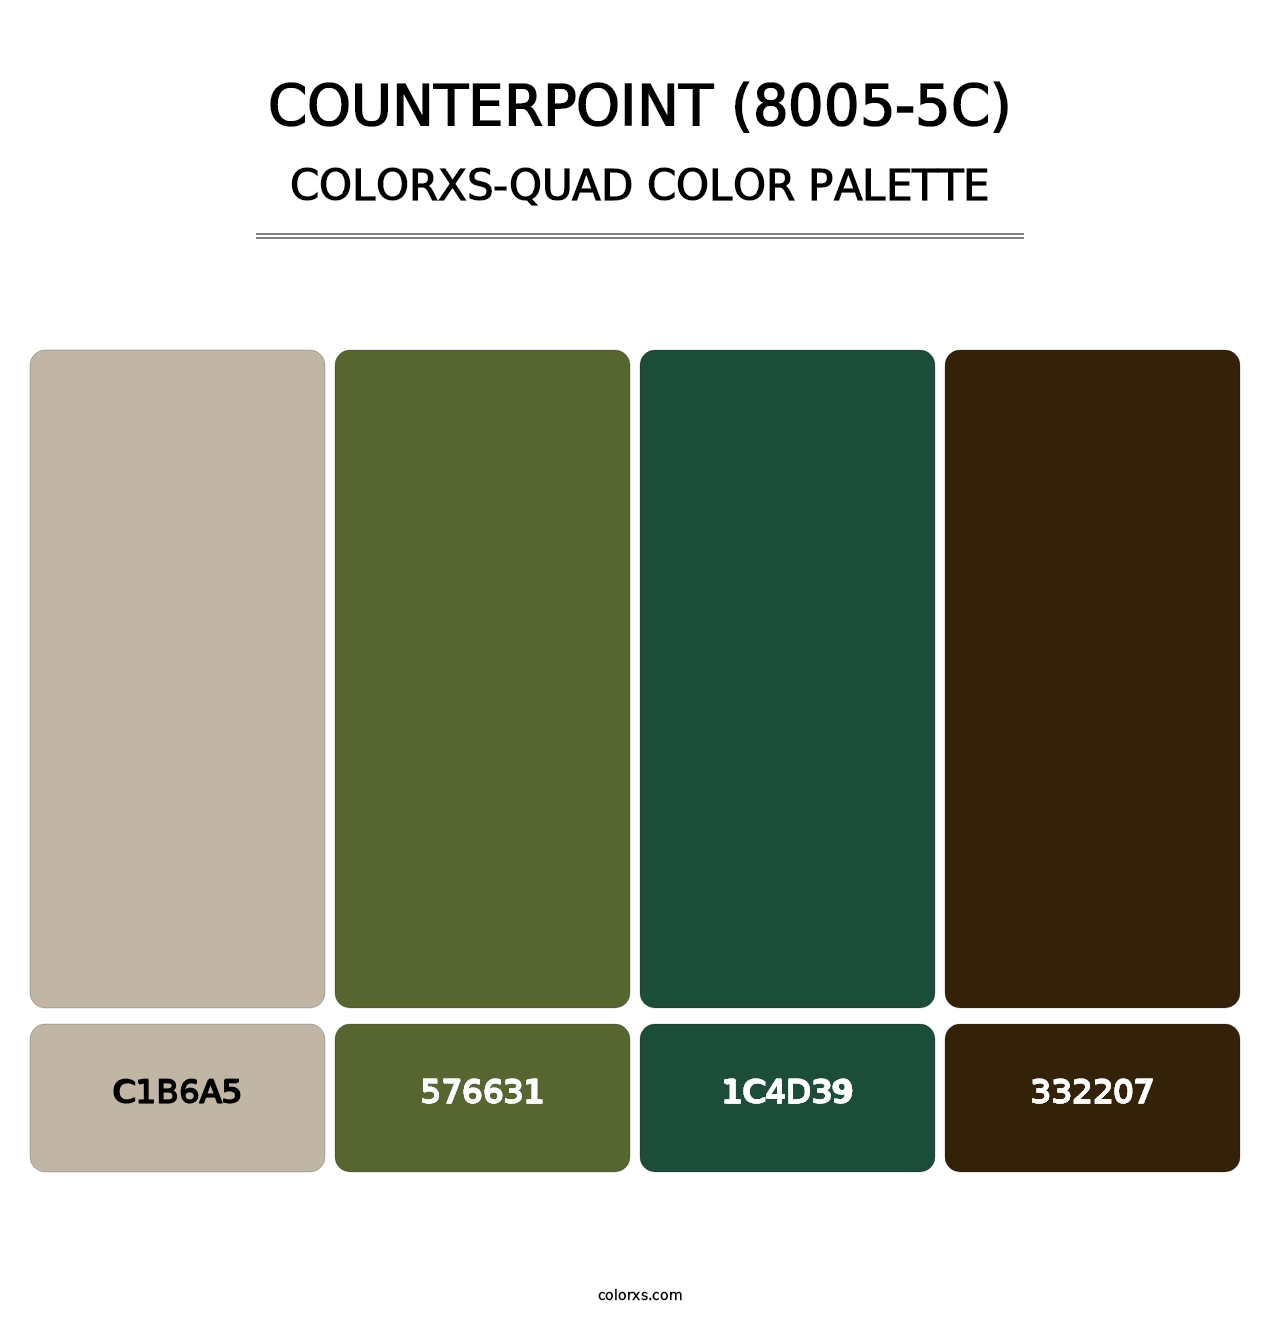 Counterpoint (8005-5C) - Colorxs Quad Palette